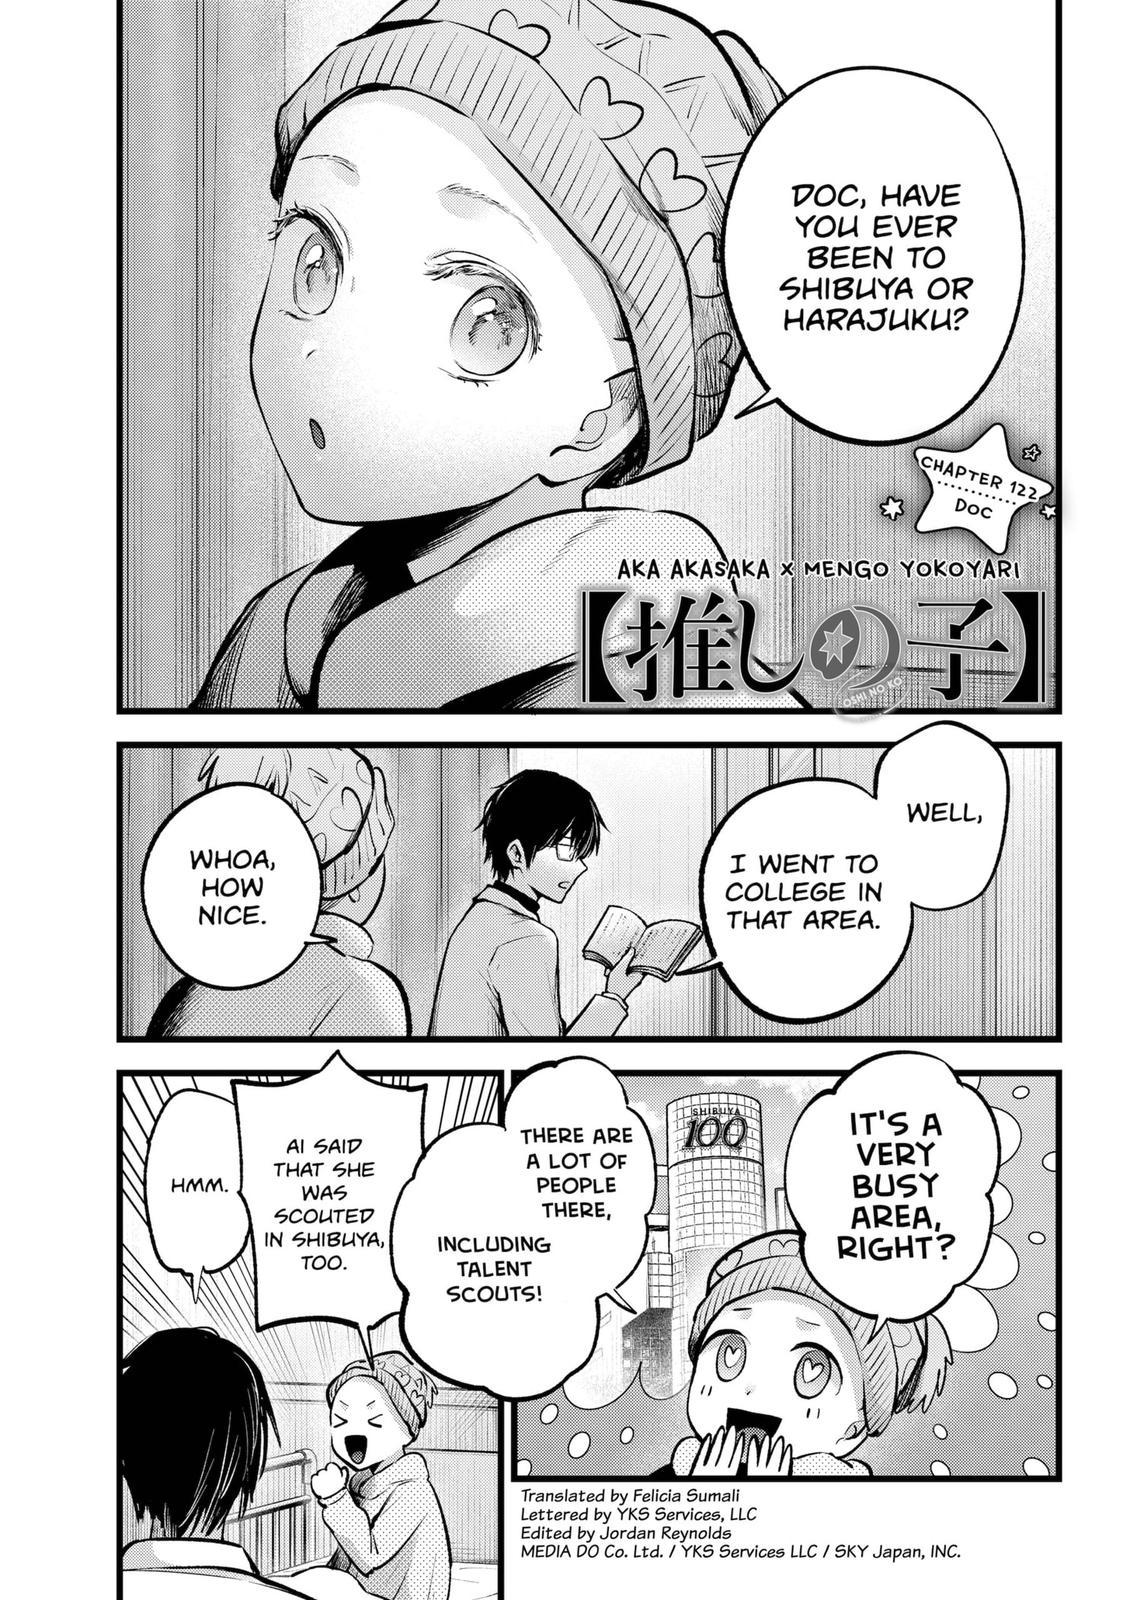 Oshi no ko, Chapter 112 - Oshi no ko Manga Online